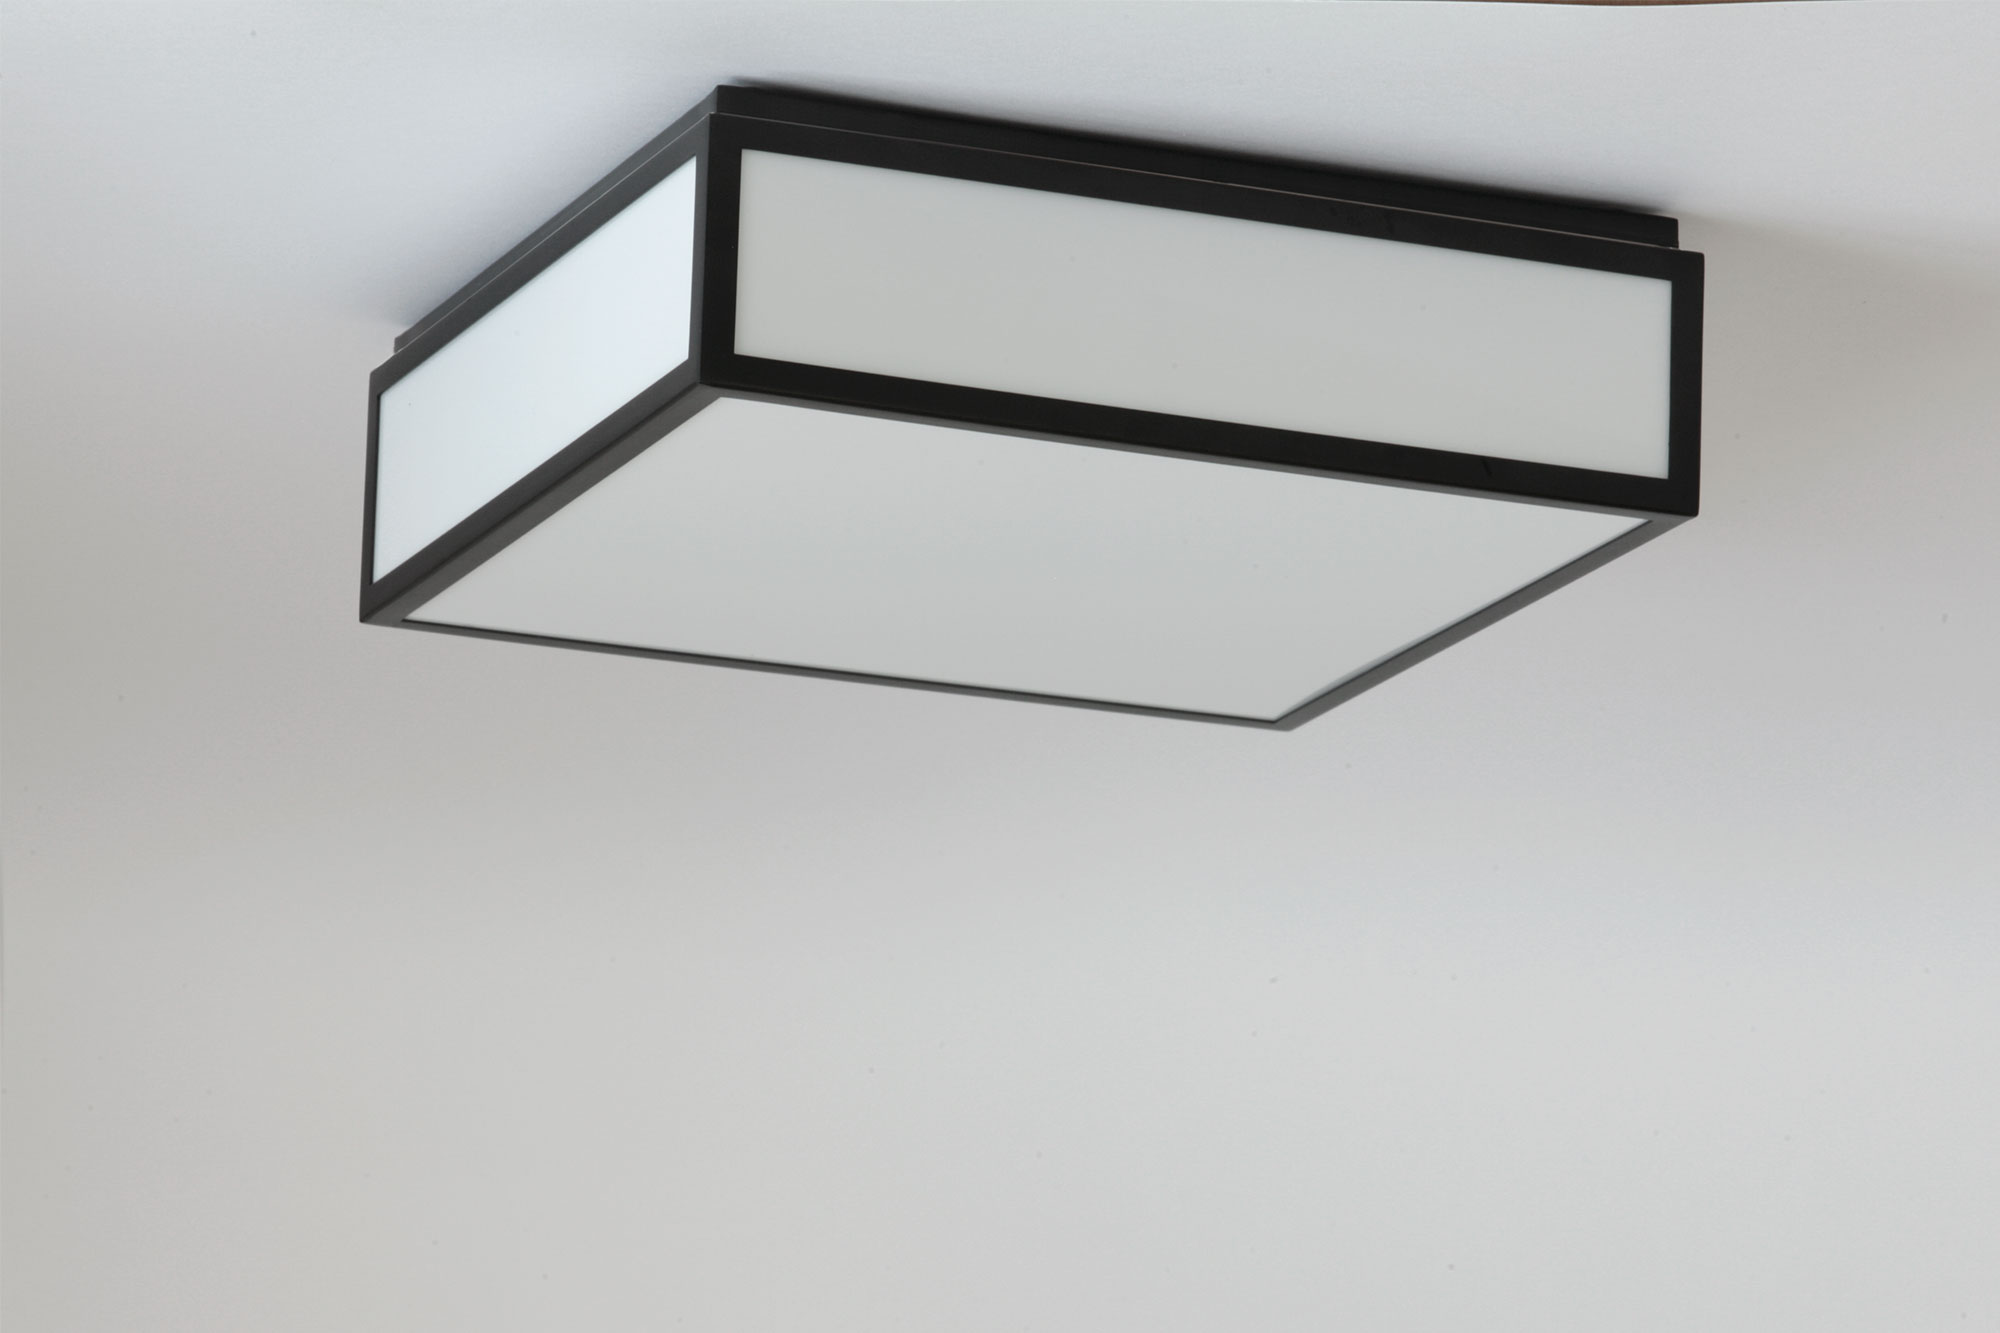 Quadratische LED-Deckenleuchte schwarz-weiß, auch für Badezimmer, 30 cm: Quadratische Deckenleuchte für das Badezimmer, flache, verglaste Kastenkonstruktion mit LED-Technik